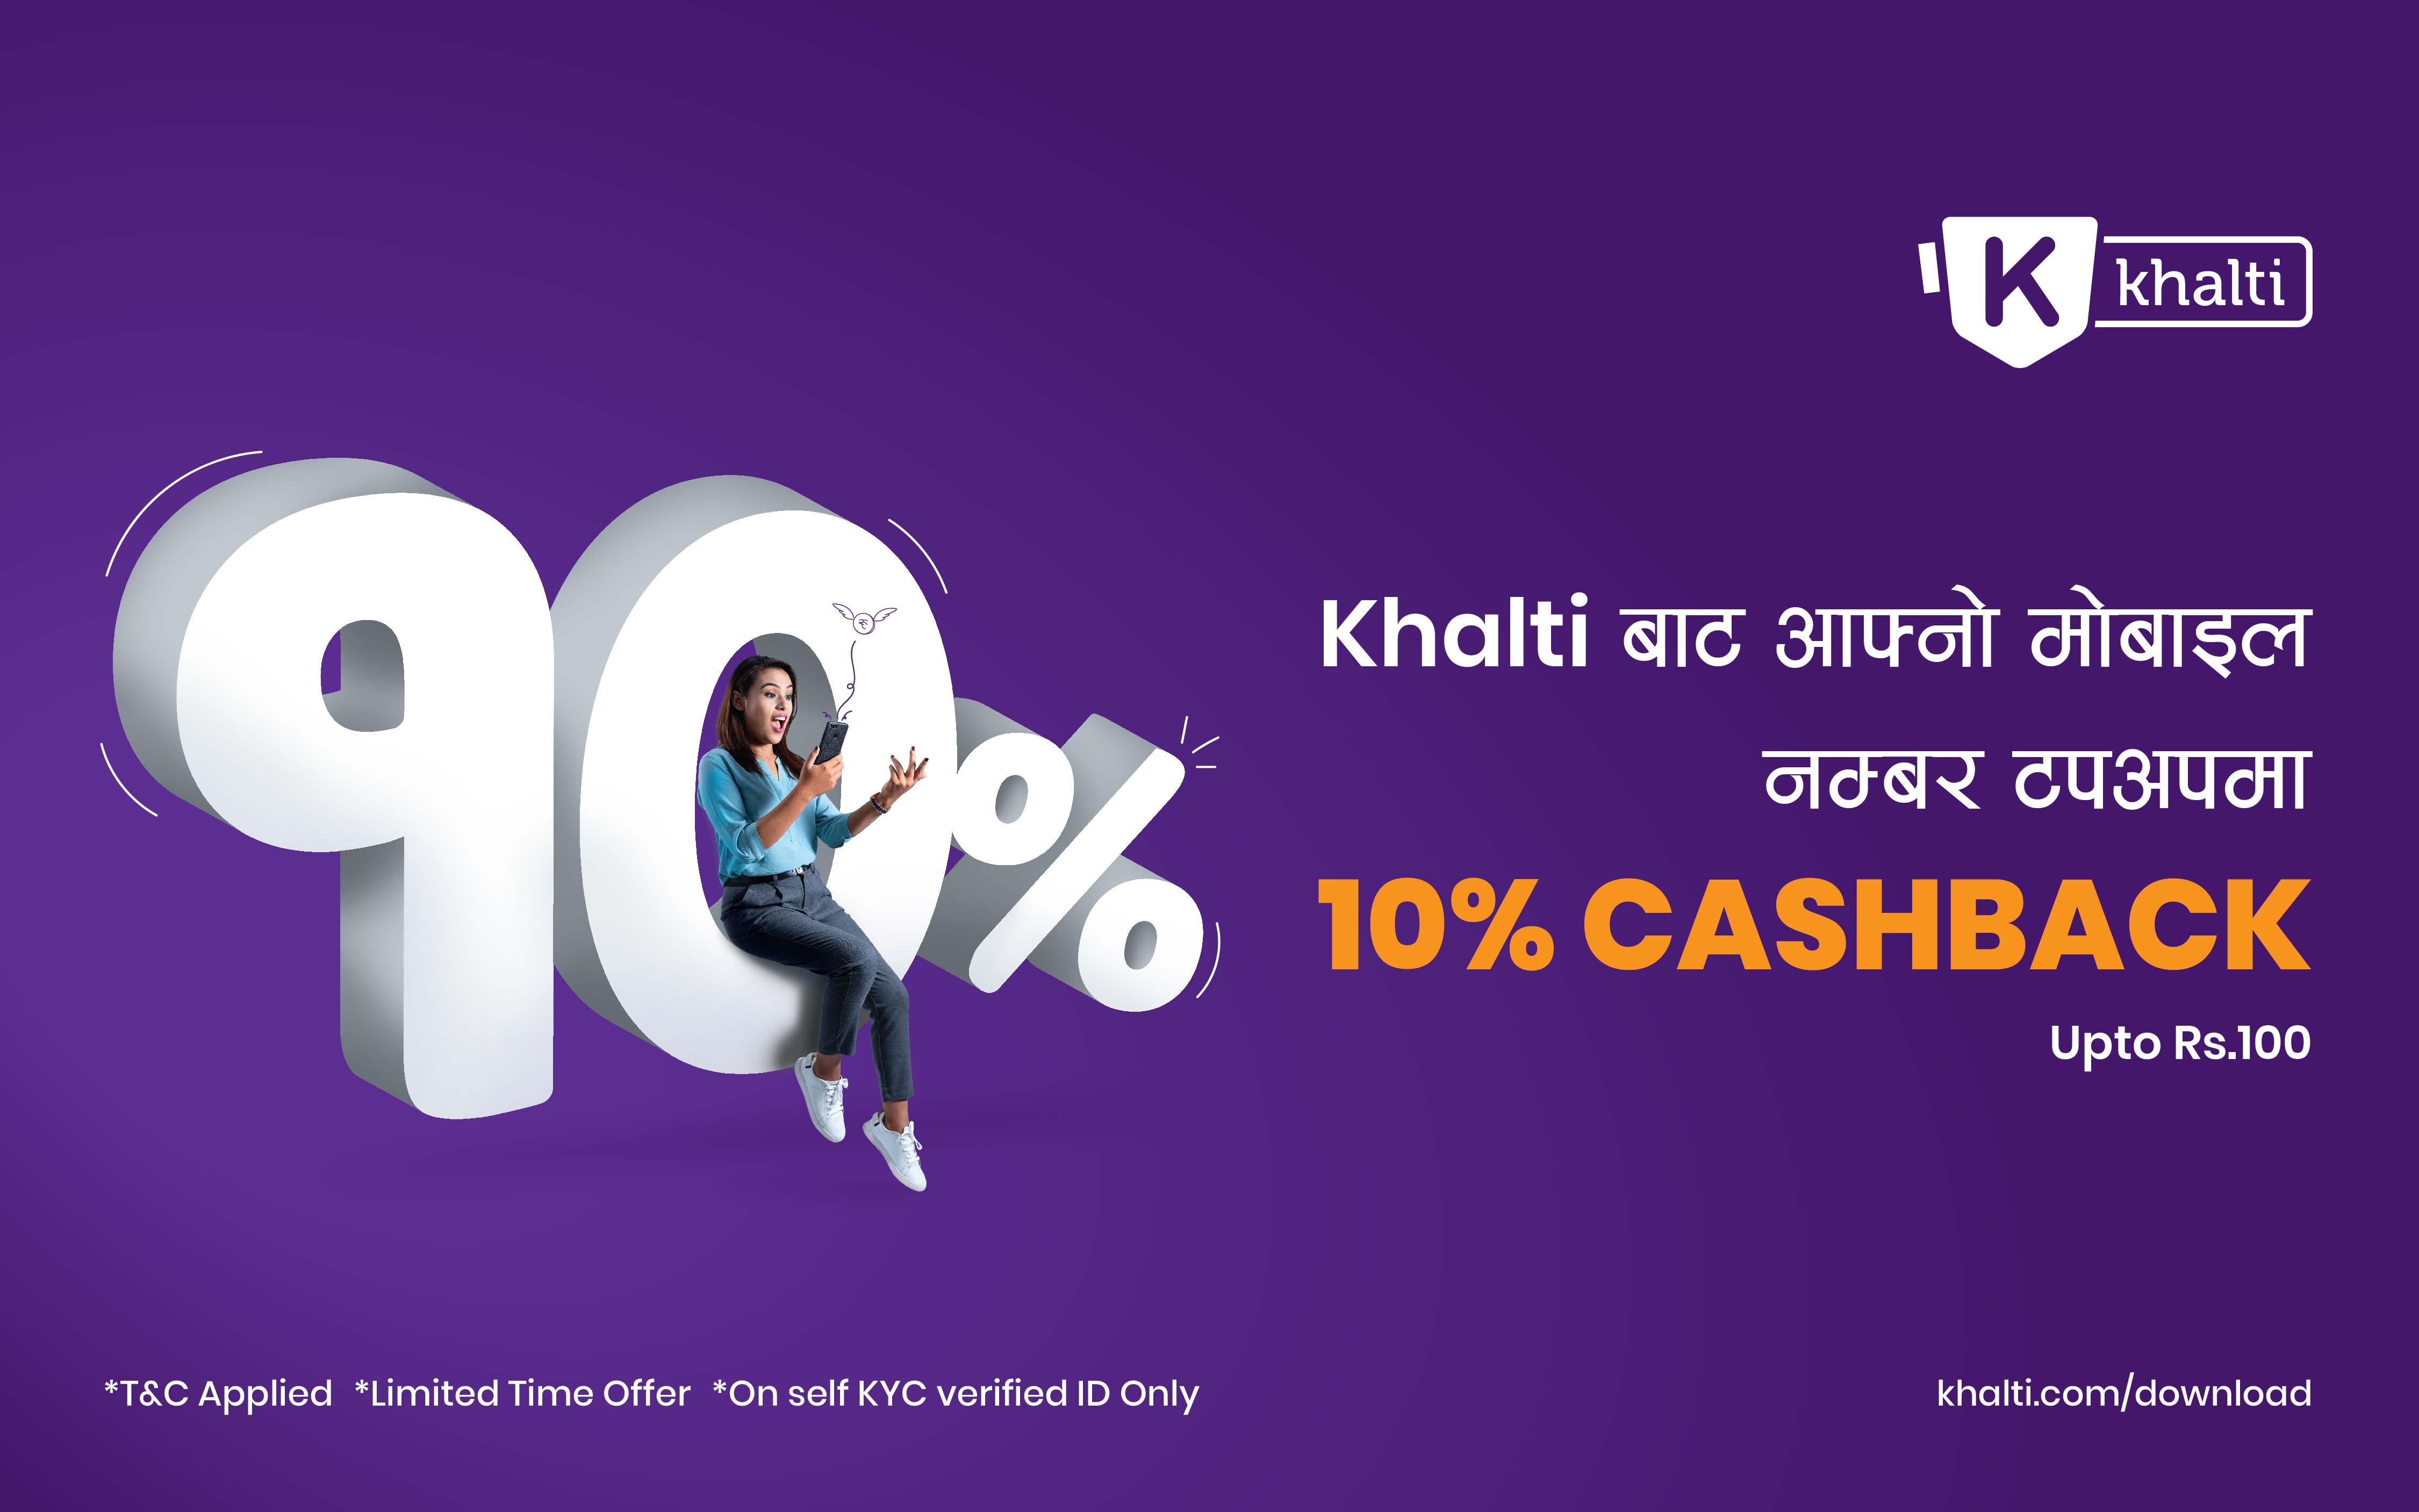 Khalti बाट आफ्नो मोबाइल नम्बर टपअपमा नेपाल कै सबै भन्दा बढी - १०% क्यासब्याक (रु. १०० सम्म)